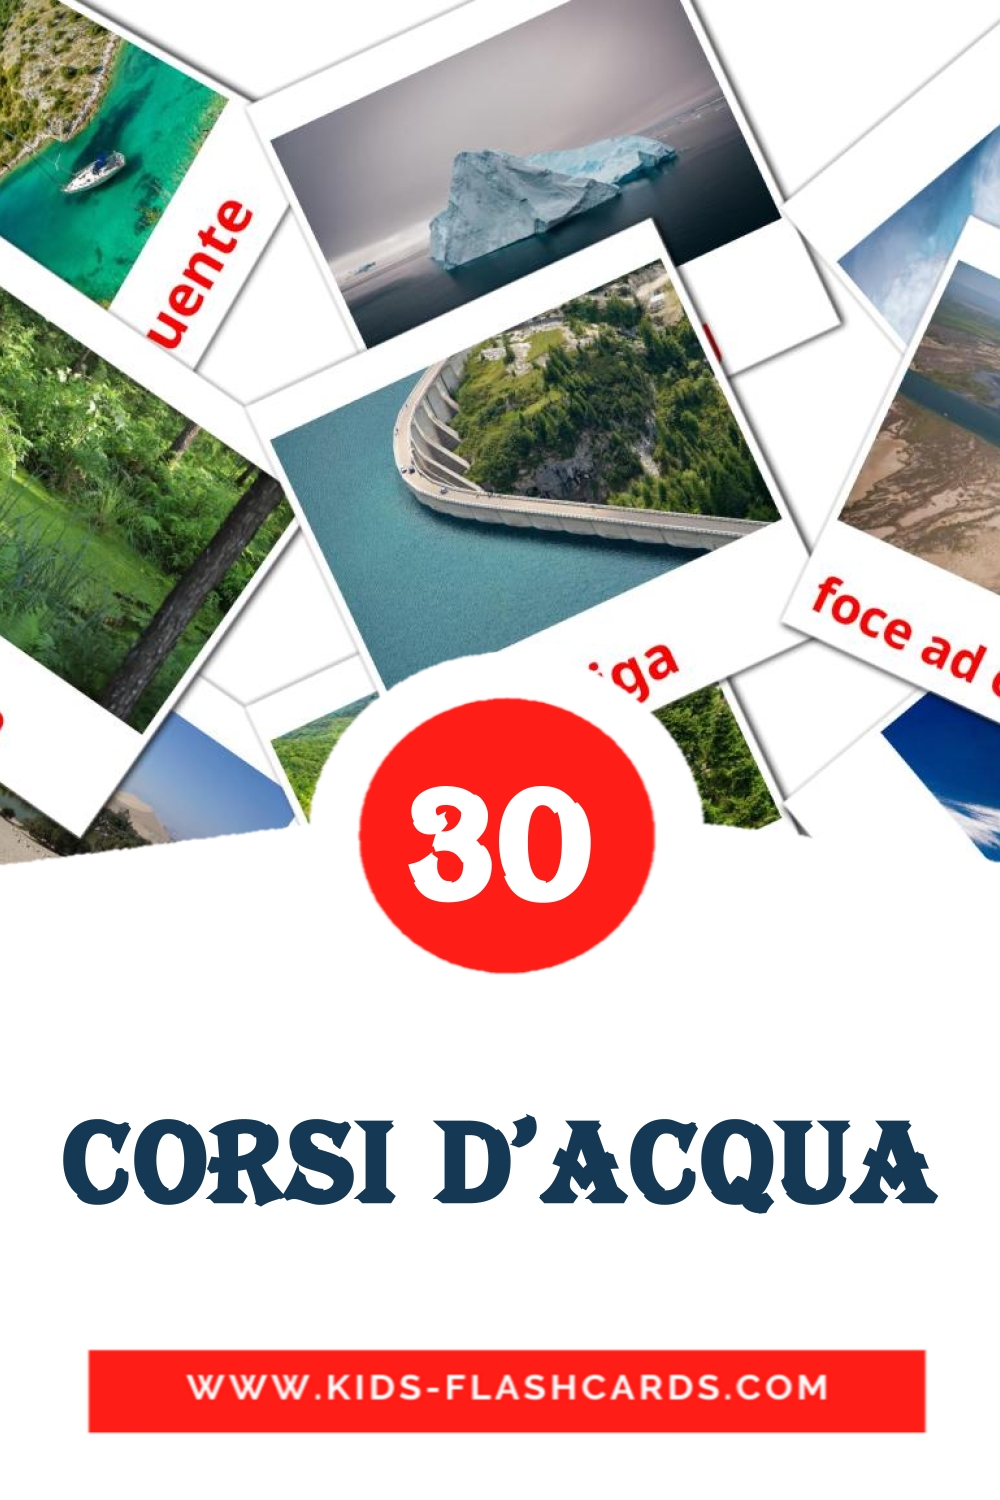 Corsi d'acqua на амхарском для Детского Сада (30 карточек)